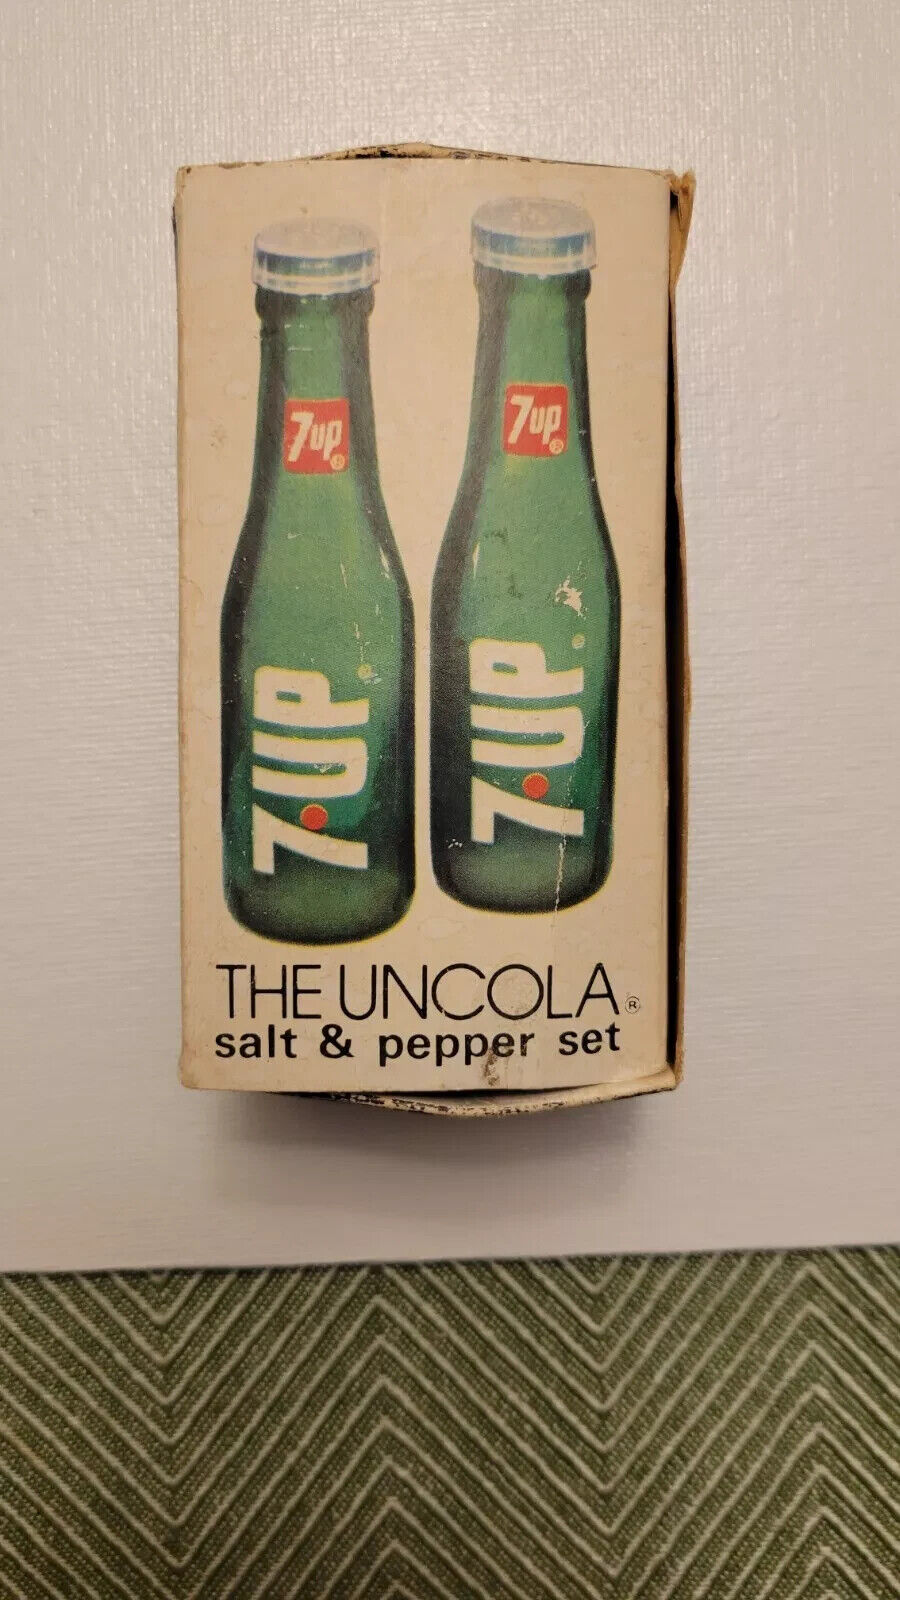 1975 Vintage 7up The Uncola Salt And Pepper Shaker Set